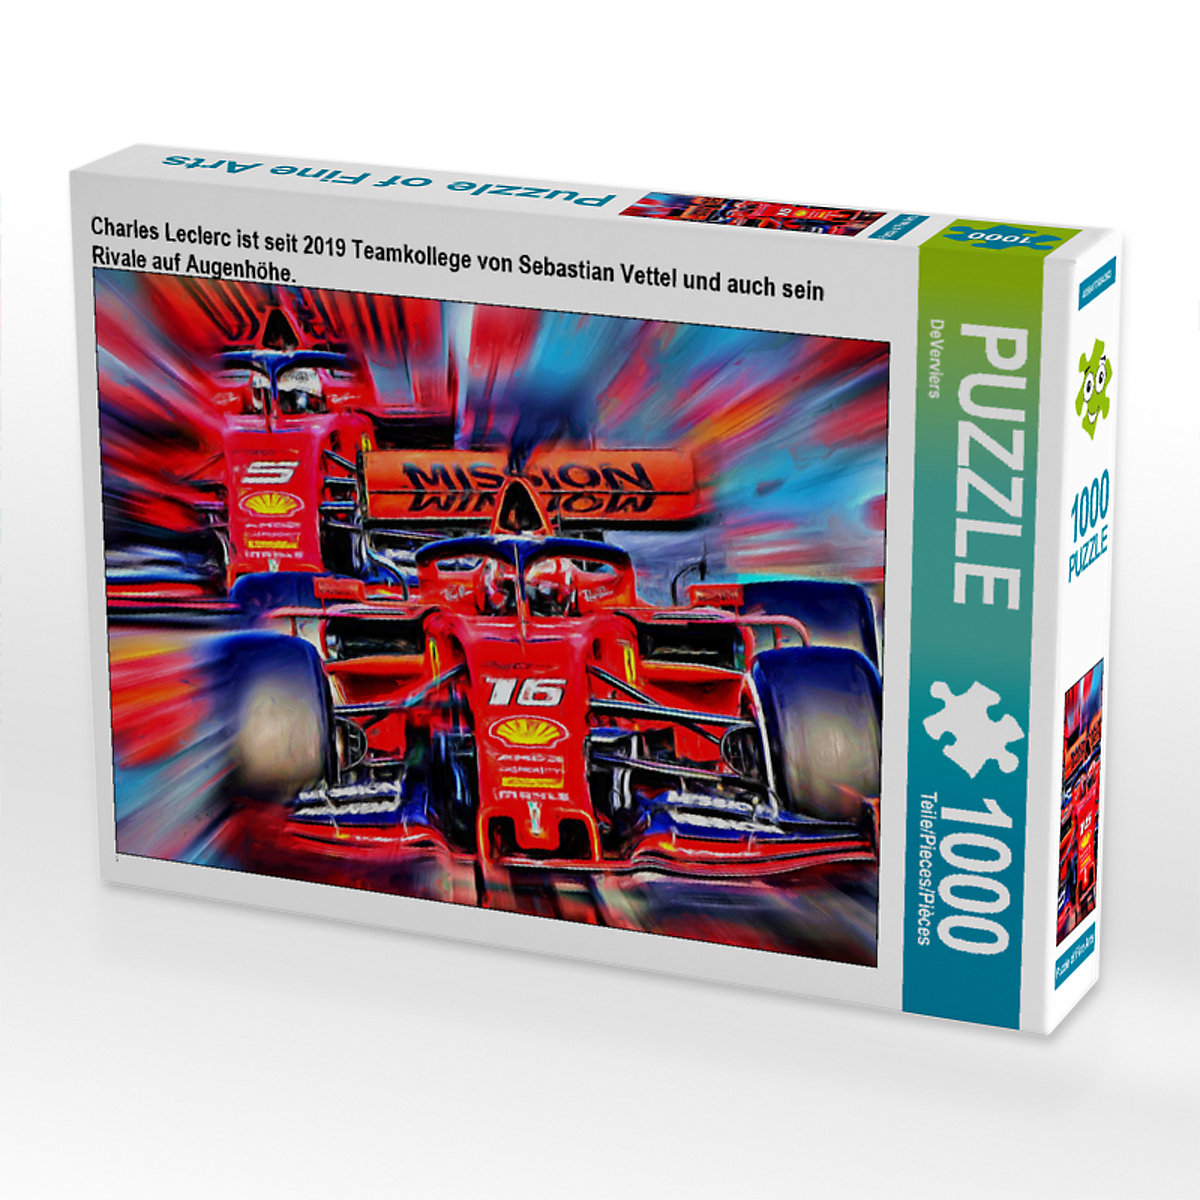 CALVENDO® Puzzle CALVENDO Puzzle Charles Leclerc ist seit 2019 Teamkollege von Sebastian Vettel und auch sein Rivale auf Augenhöhe. 1000 Teile Foto-Puzzle für glückliche Stunden